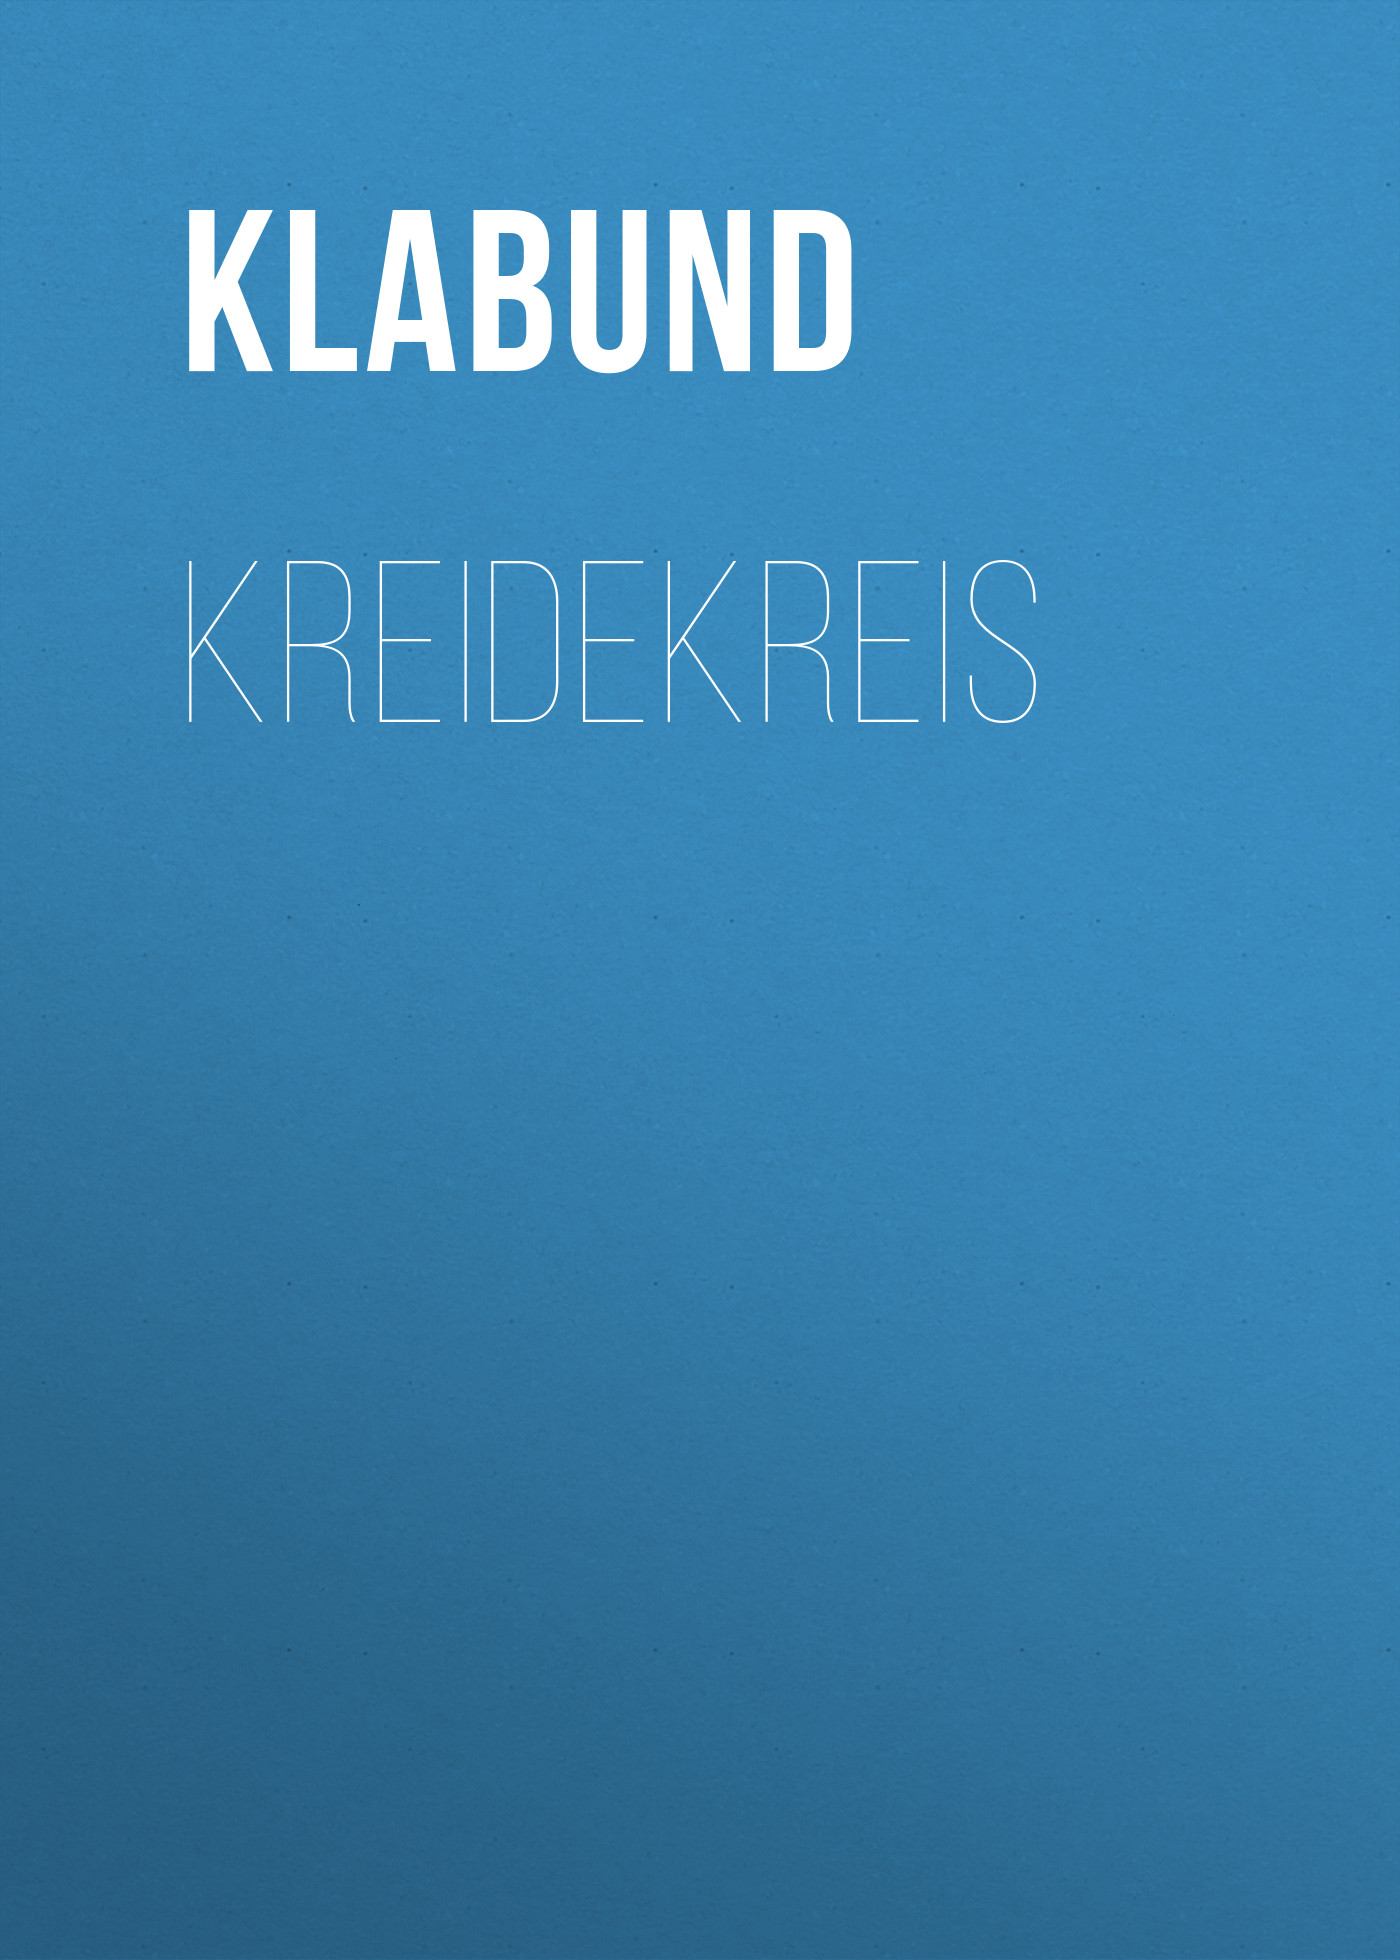 Книга Kreidekreis из серии , созданная Klabund , может относится к жанру Зарубежная классика. Стоимость электронной книги Kreidekreis с идентификатором 48633972 составляет 0 руб.